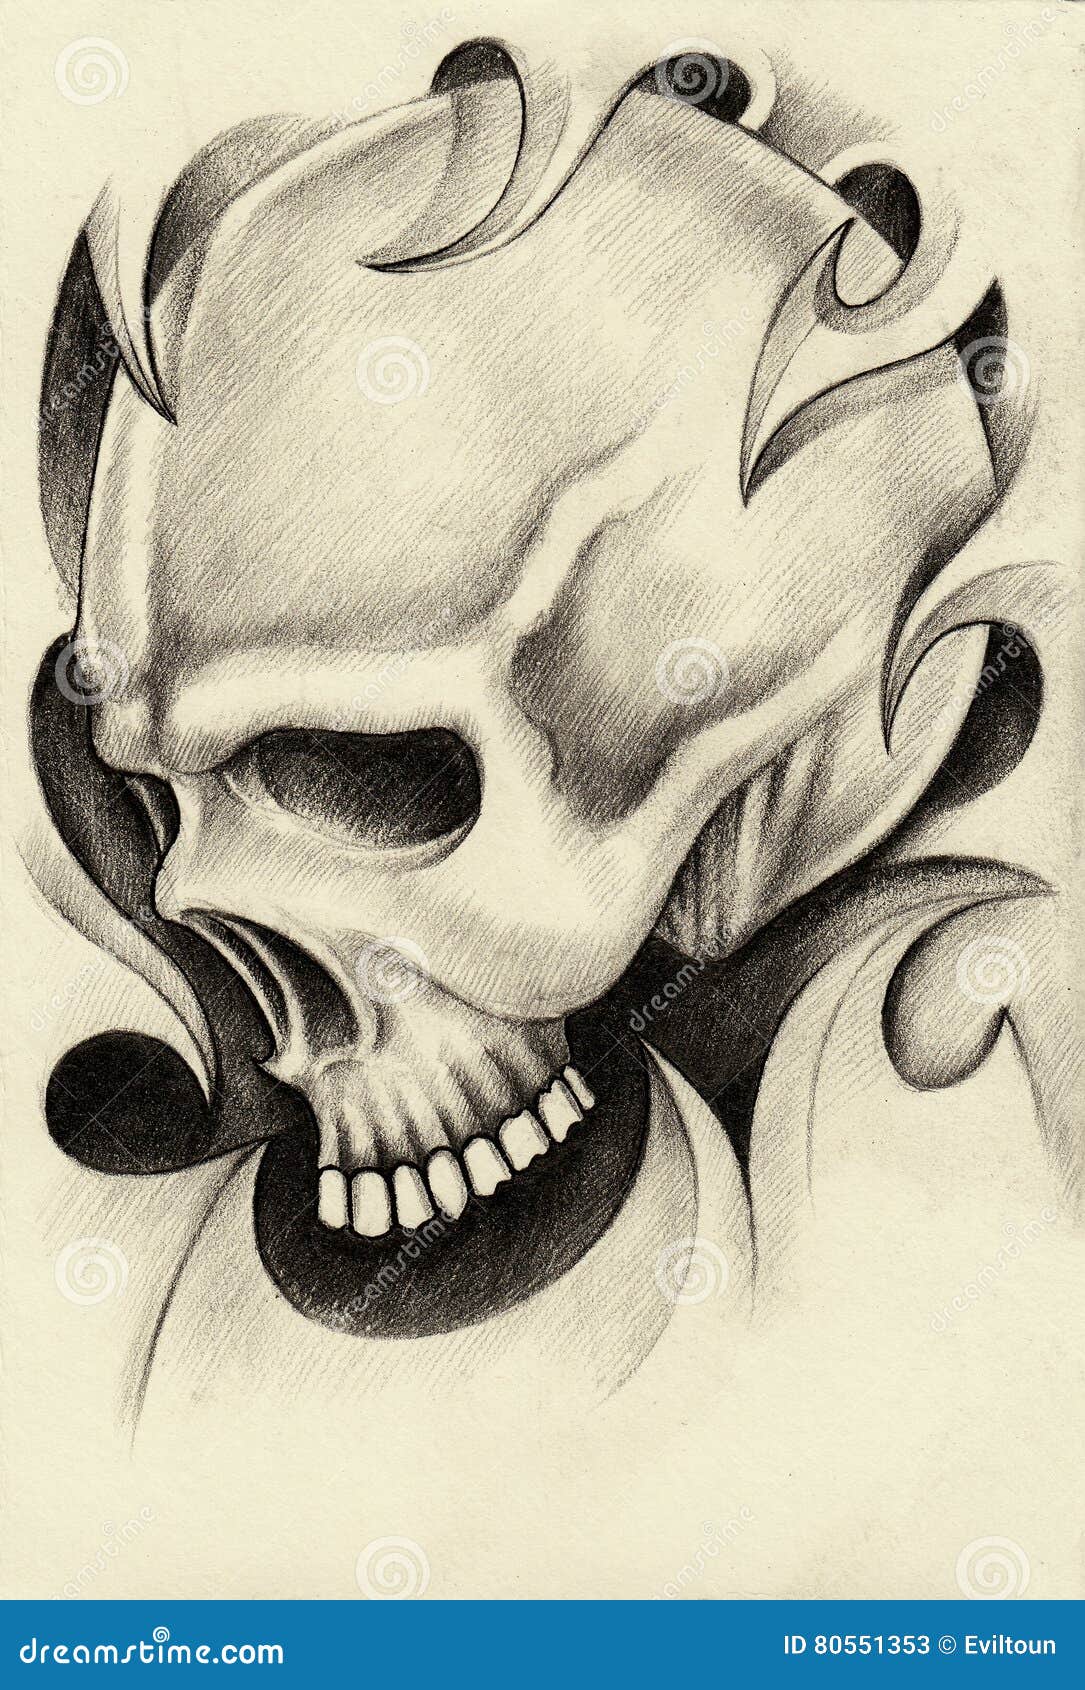 Art Surreal Skull Tattoohand Pencil Drawing Stock Illustration 643625122   Shutterstock